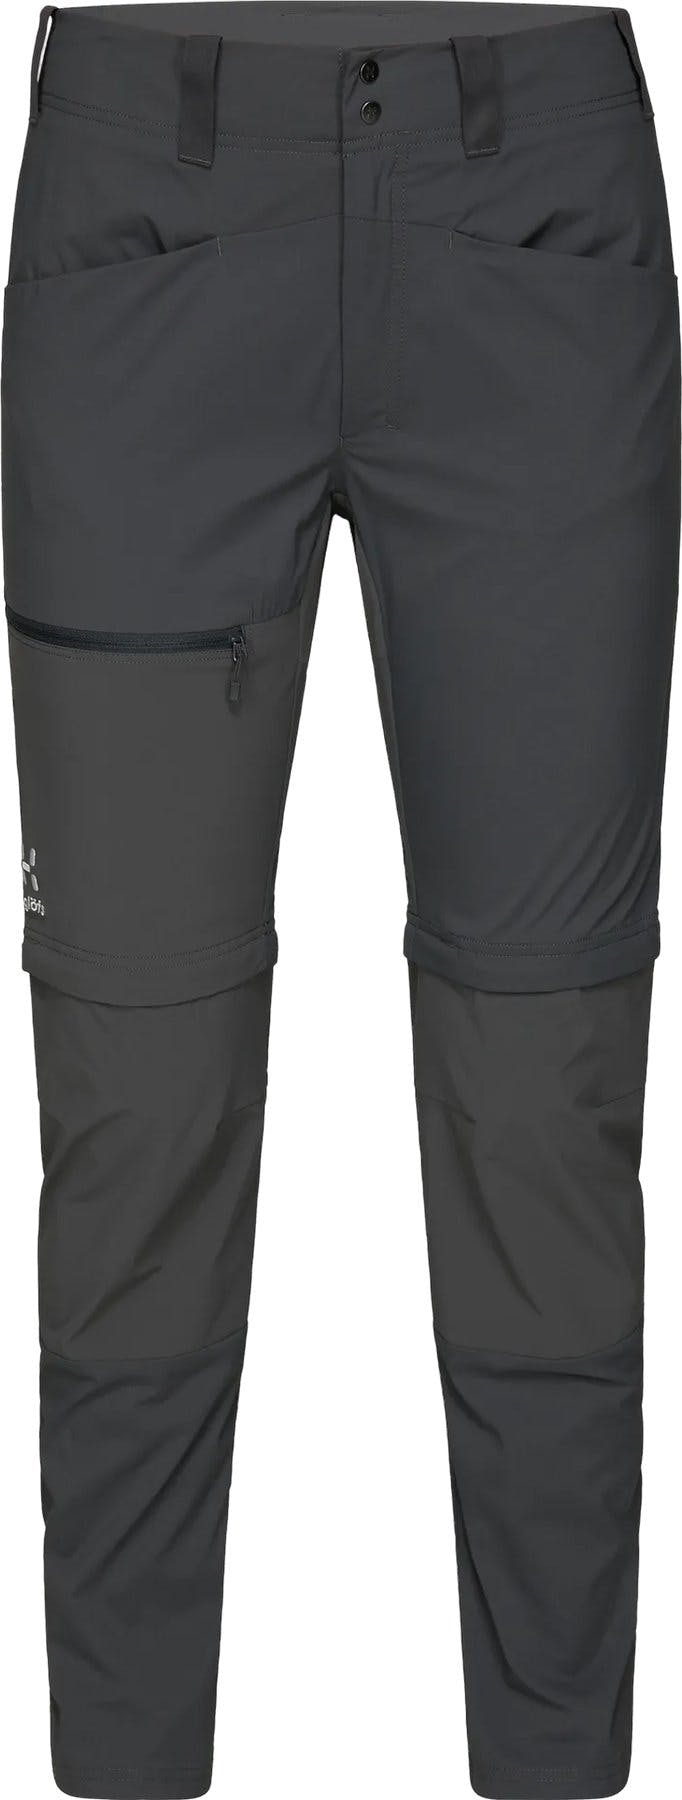 Image de produit pour Pantalon coupe ajustée Lite Zip-Off - Femme